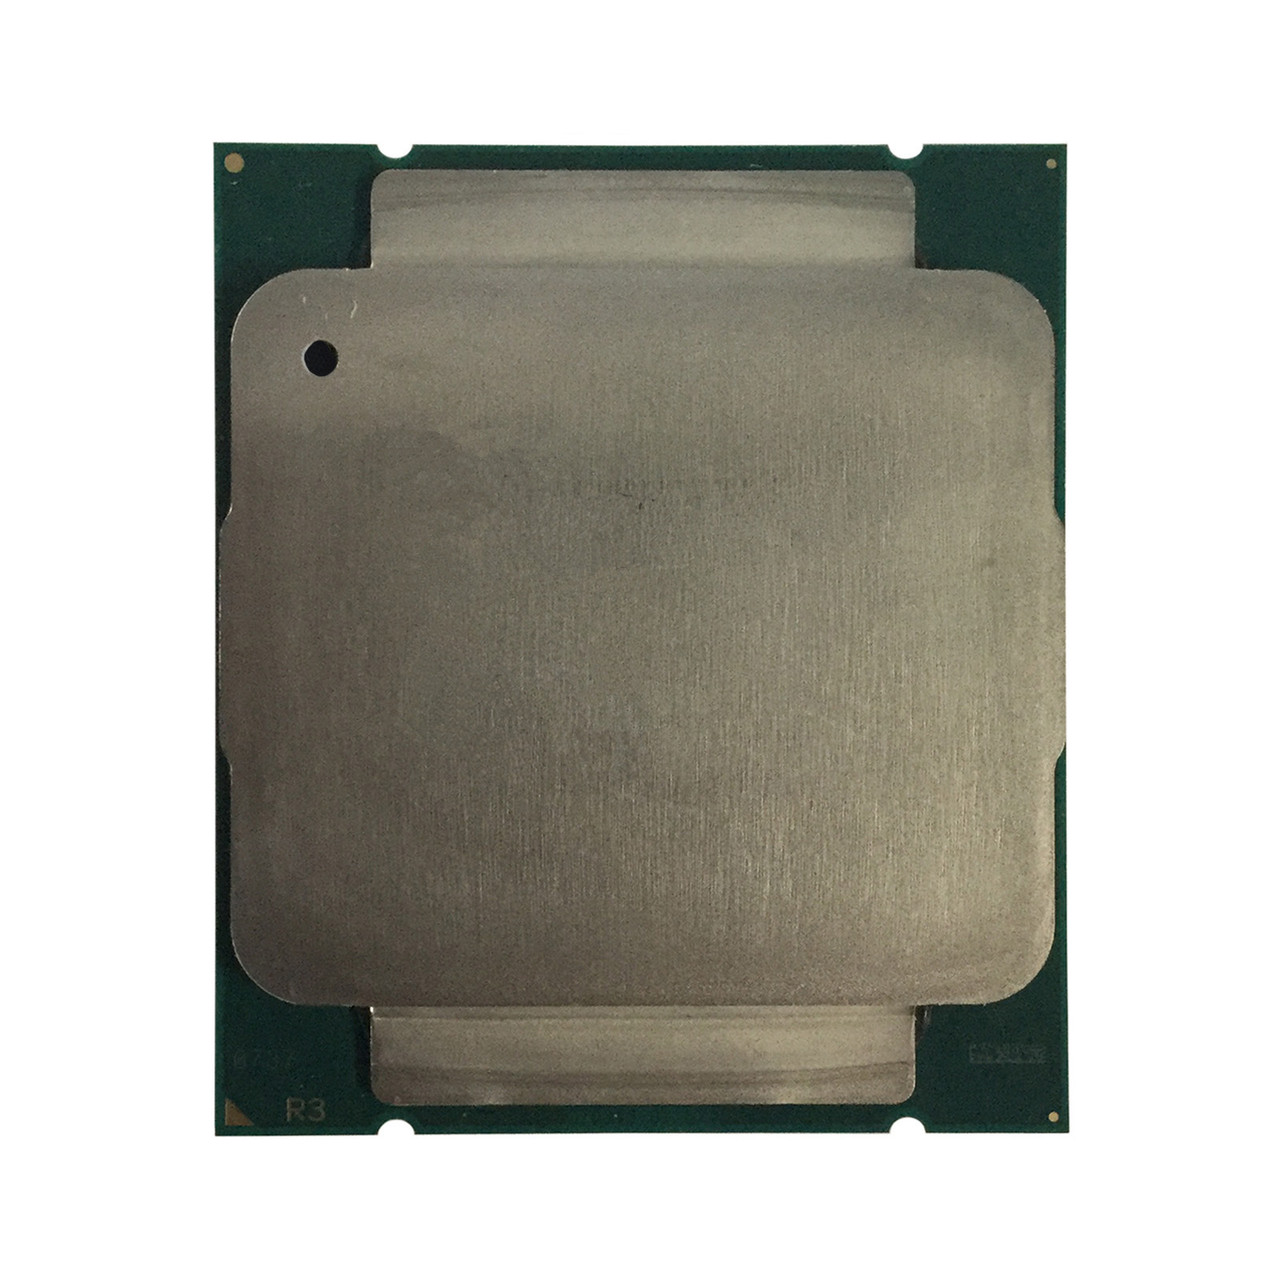 HP Z440 Z640 E5-1620 V3 4C 3.5Ghz 10MB Processor